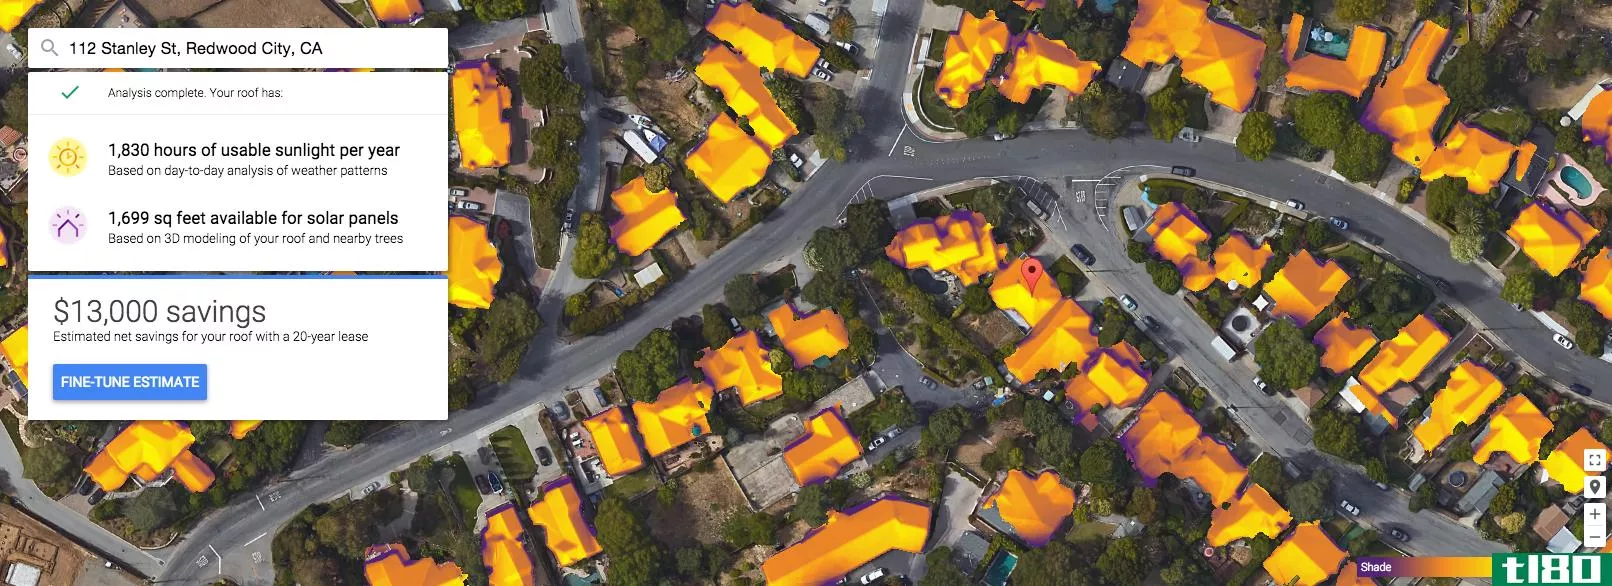 谷歌地图现在可以告诉你是否值得在你的屋顶安装太阳能电池板